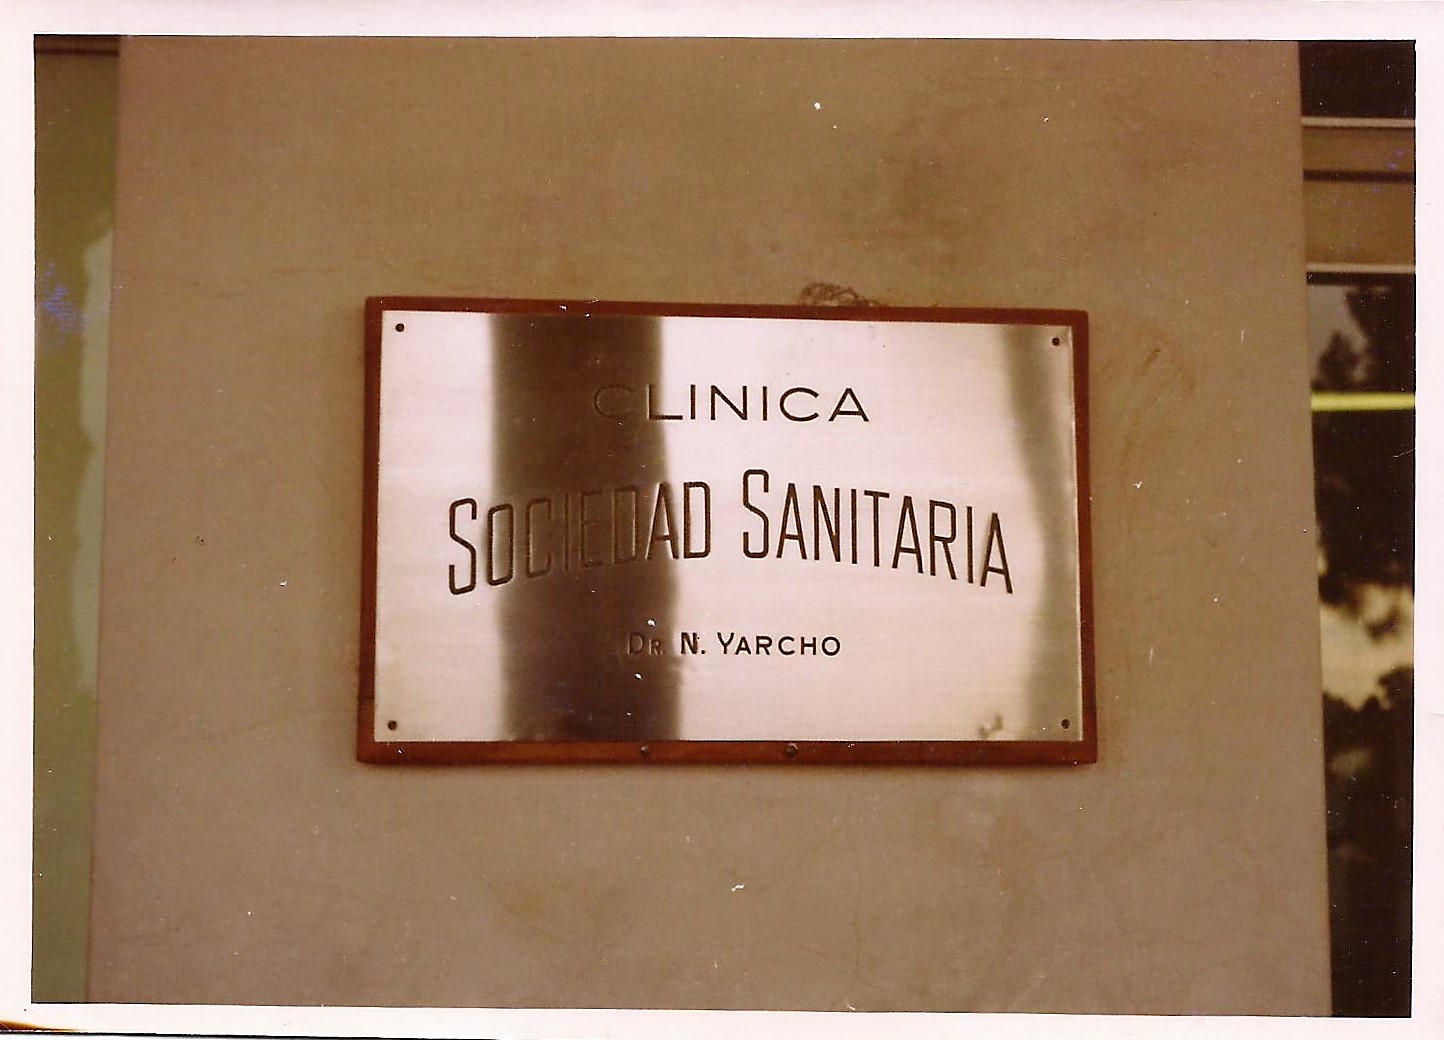 hospi placa 1970